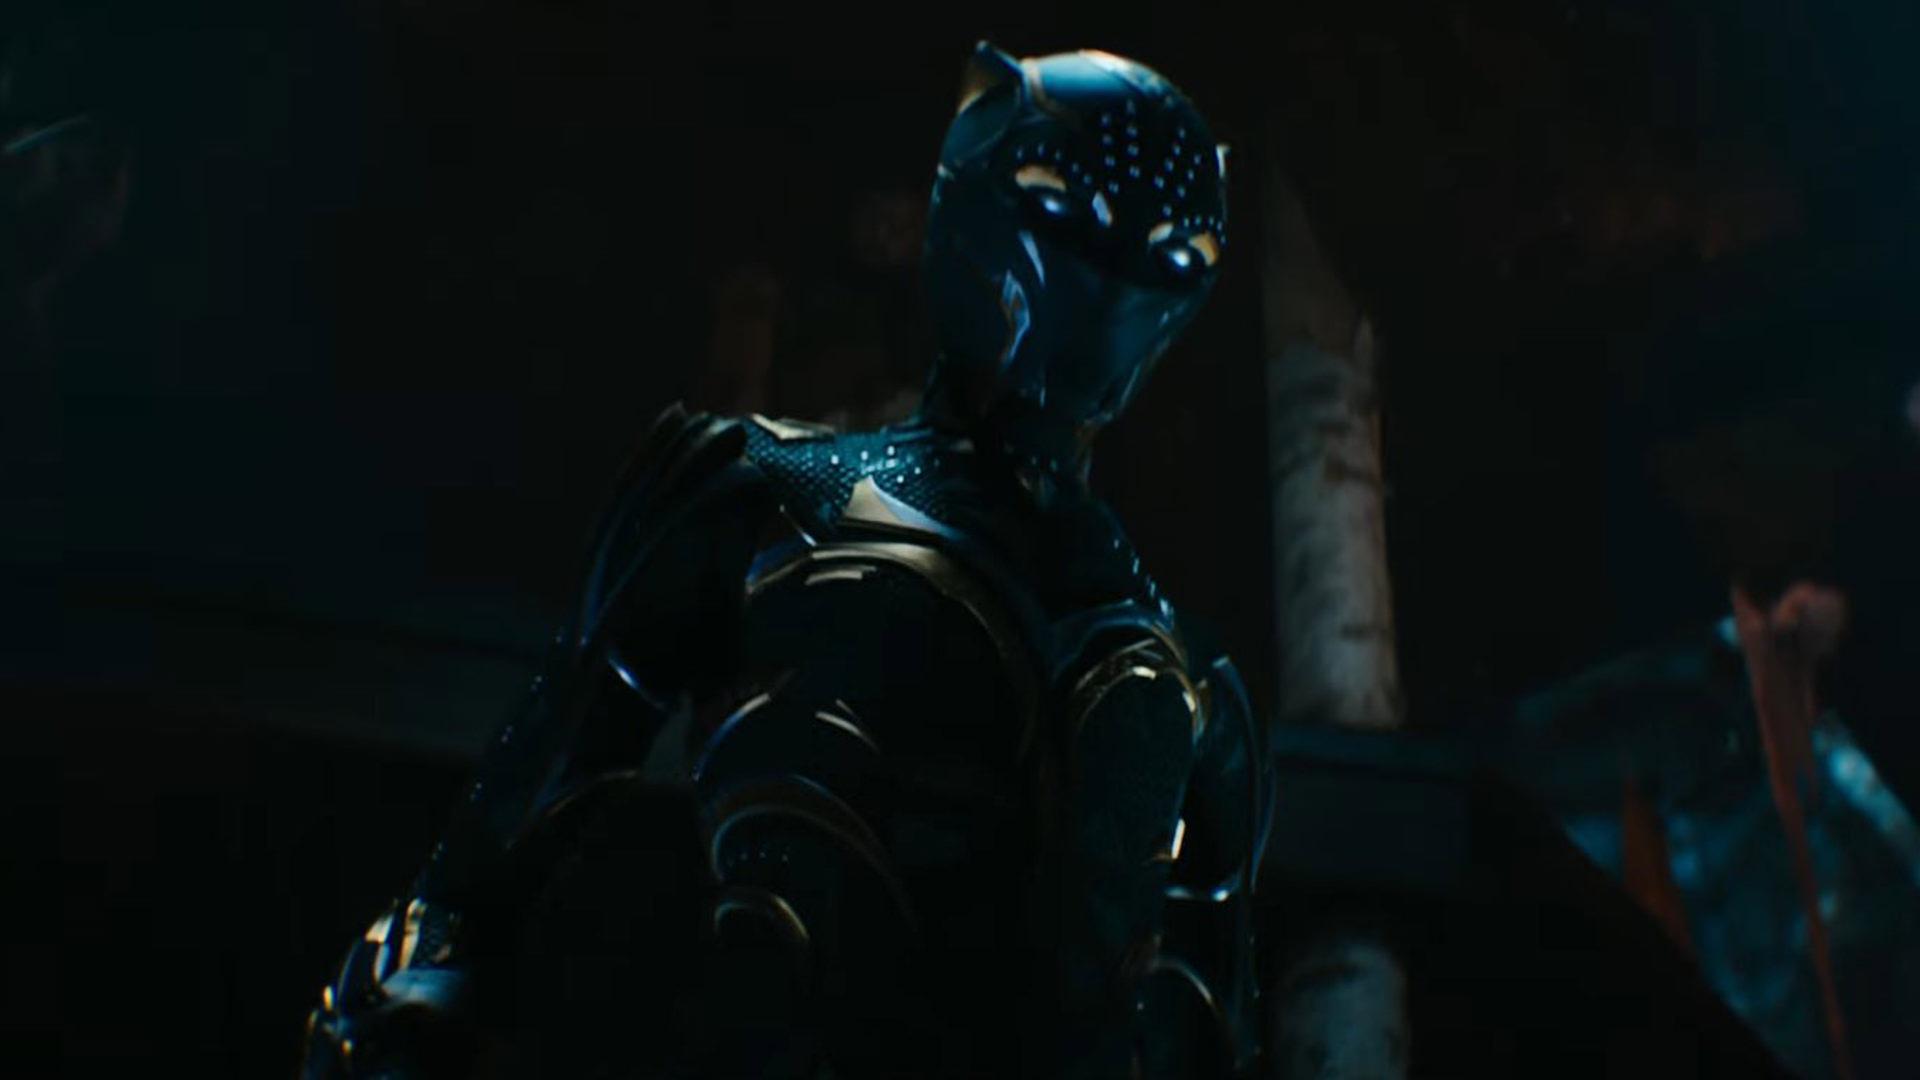 نمایش پلنگ سیاه بعدی در تریلر جدید فیلم Black Panther 2